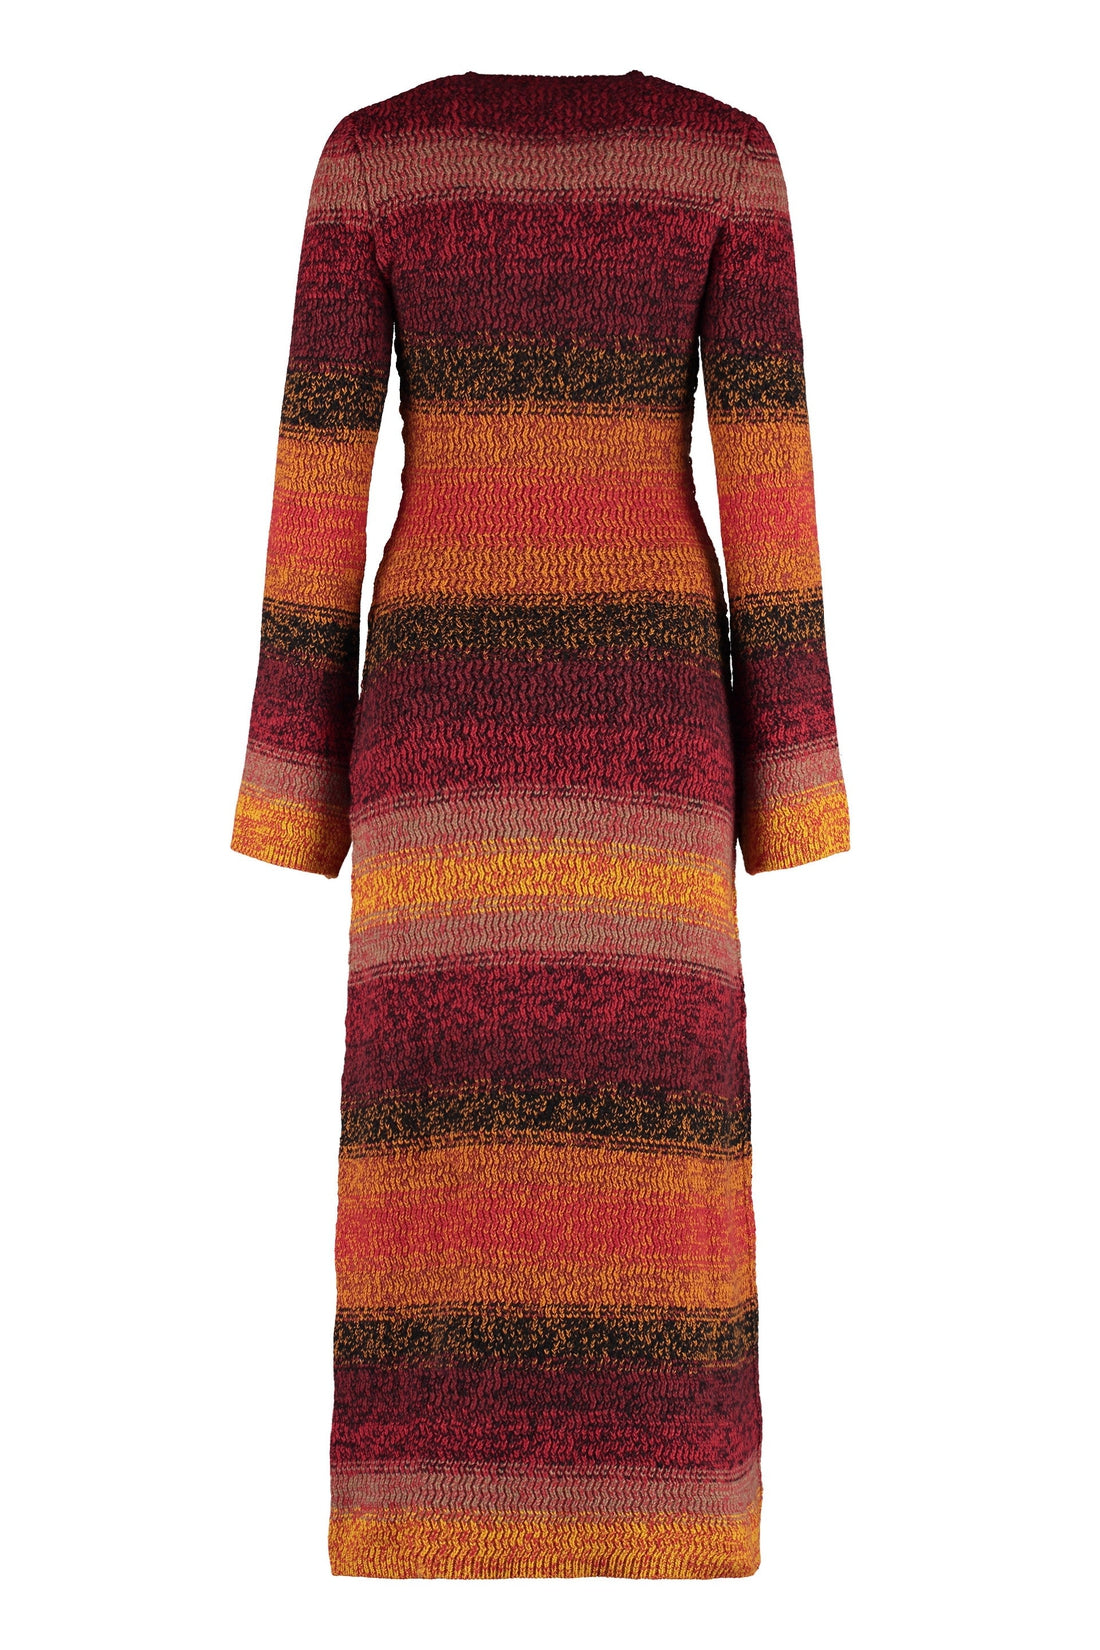 Chloé-OUTLET-SALE-Cashmere sweater-dress-ARCHIVIST